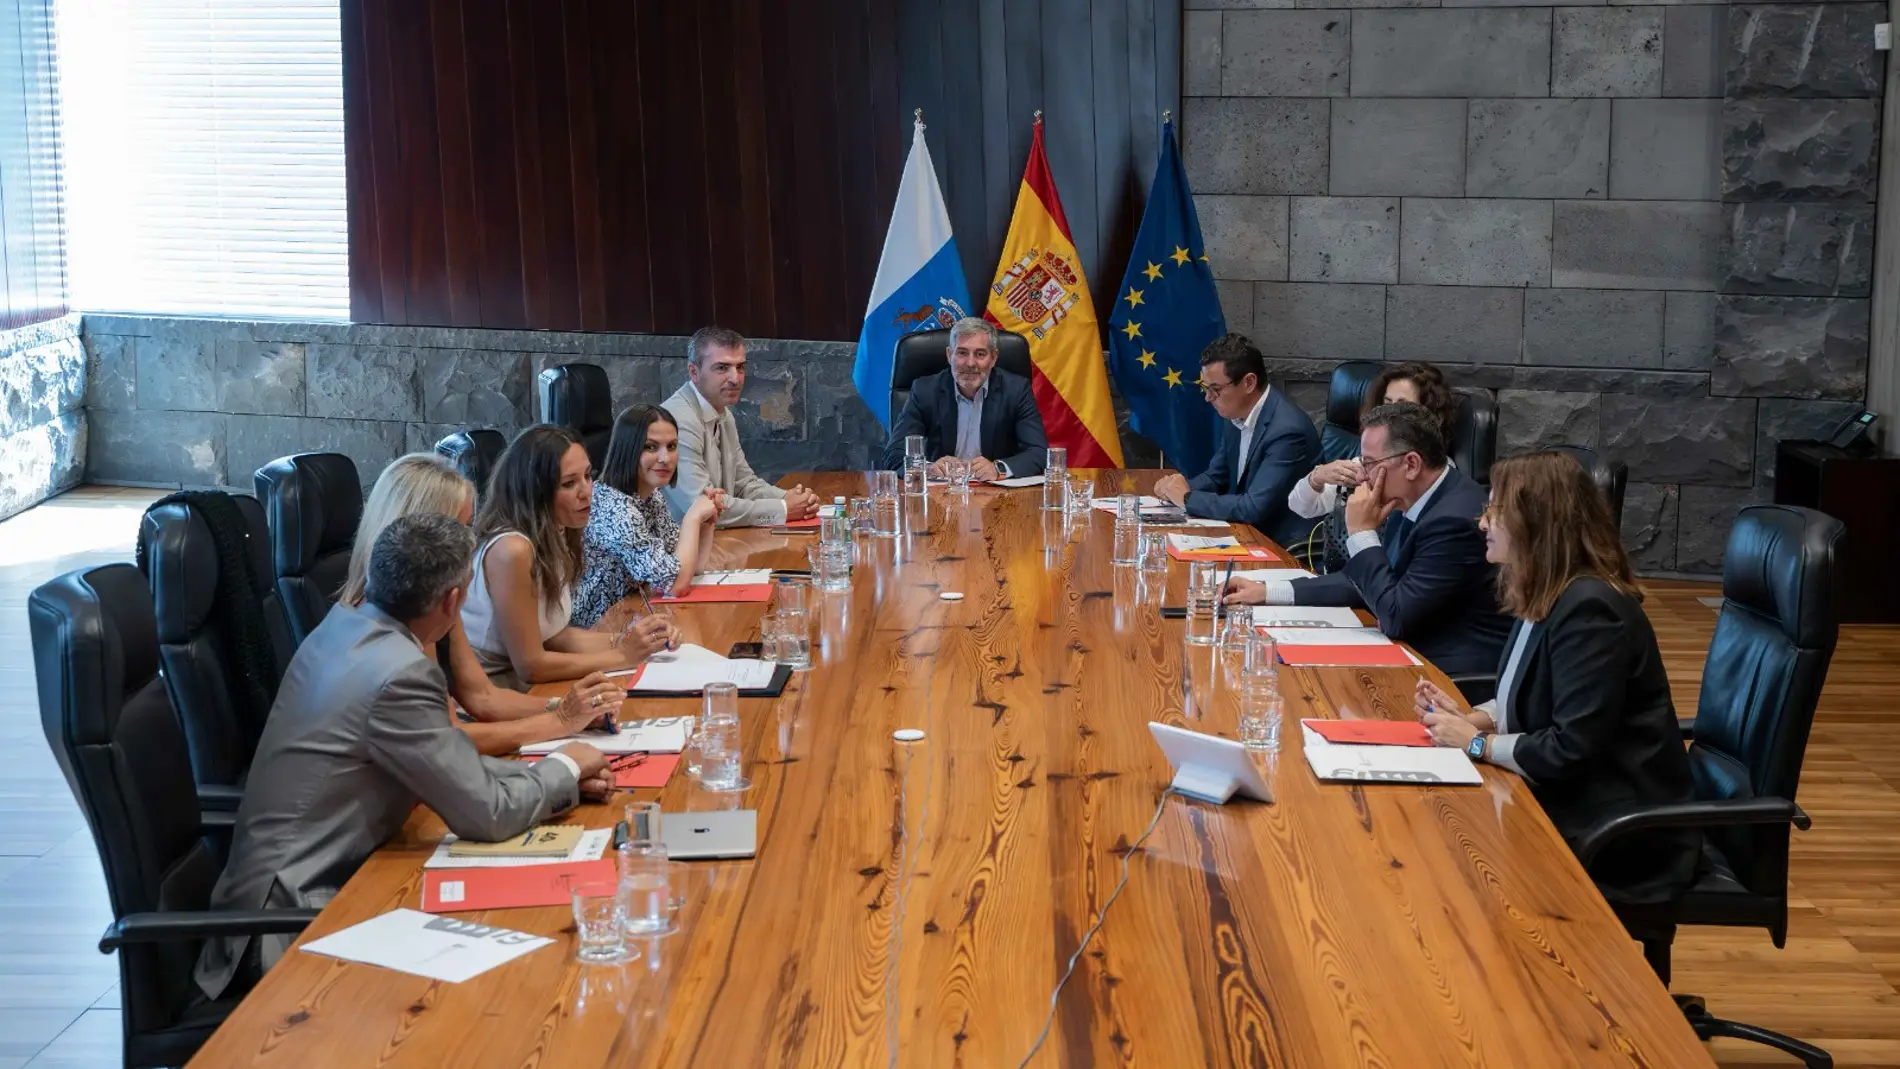 El Gobierno de Canarias reunido en consejo